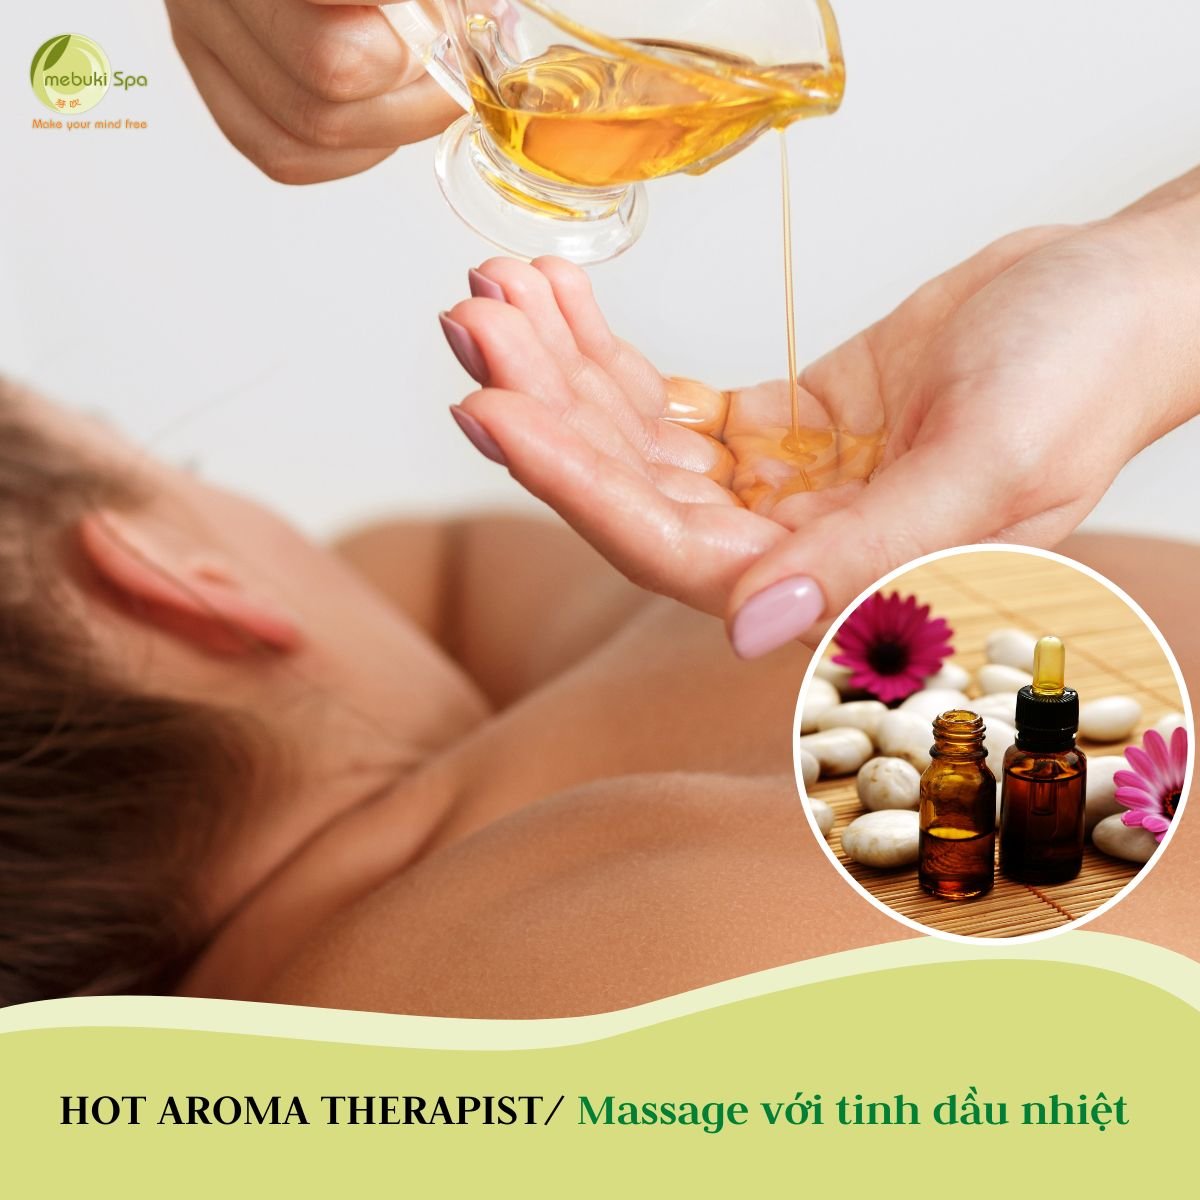 Hot aroma therapist - massage với tinh dầu nhiệt